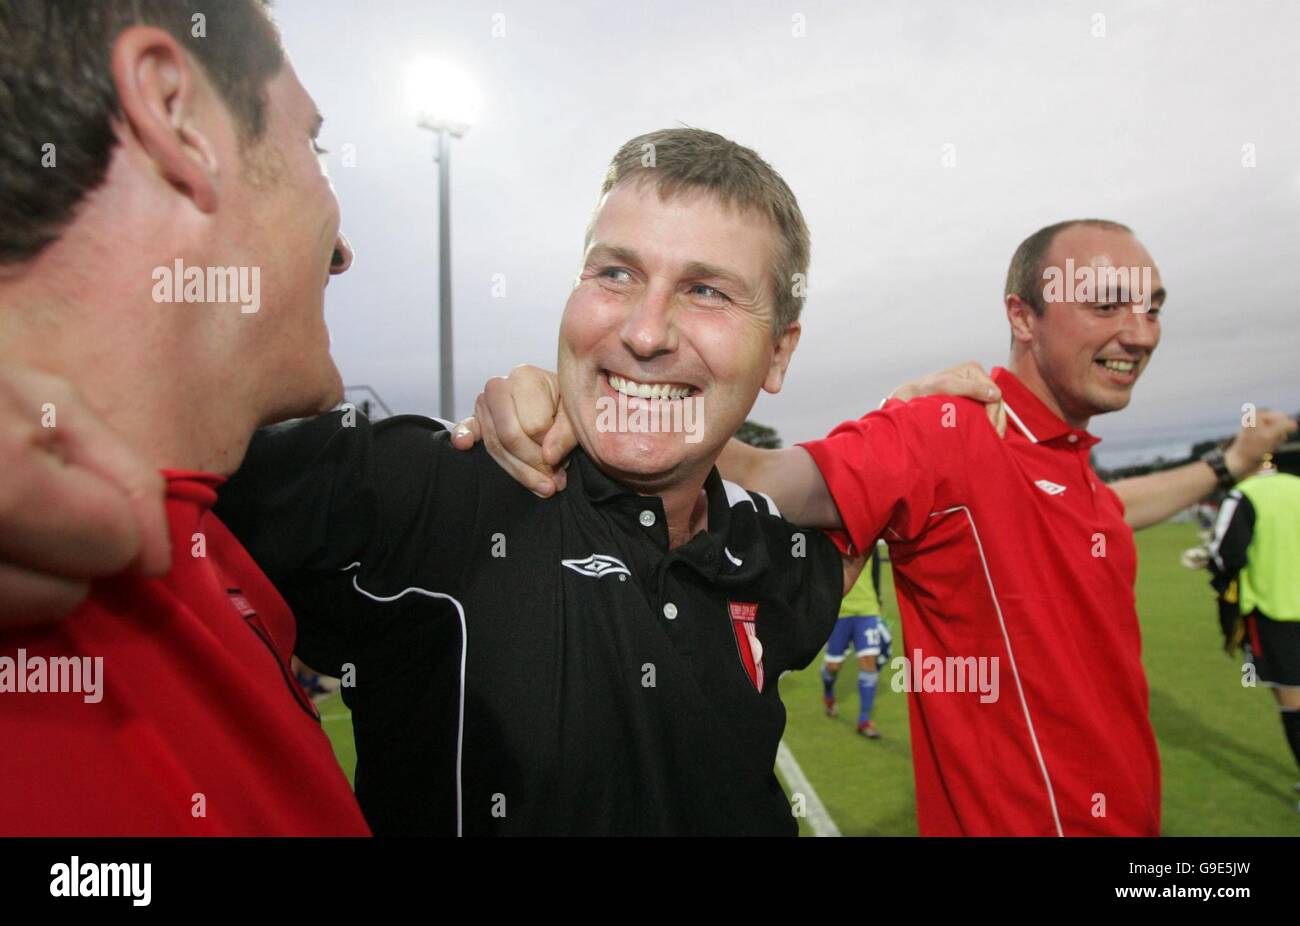 Stephen Kenny, manager di Derry City, festeggia con gli altri giocatori della squadra dopo aver sconfitto l'IFK Gothenburg durante la prima partita di qualificazione della Coppa UEFA al Brandywell Stadium di Derry. Foto Stock